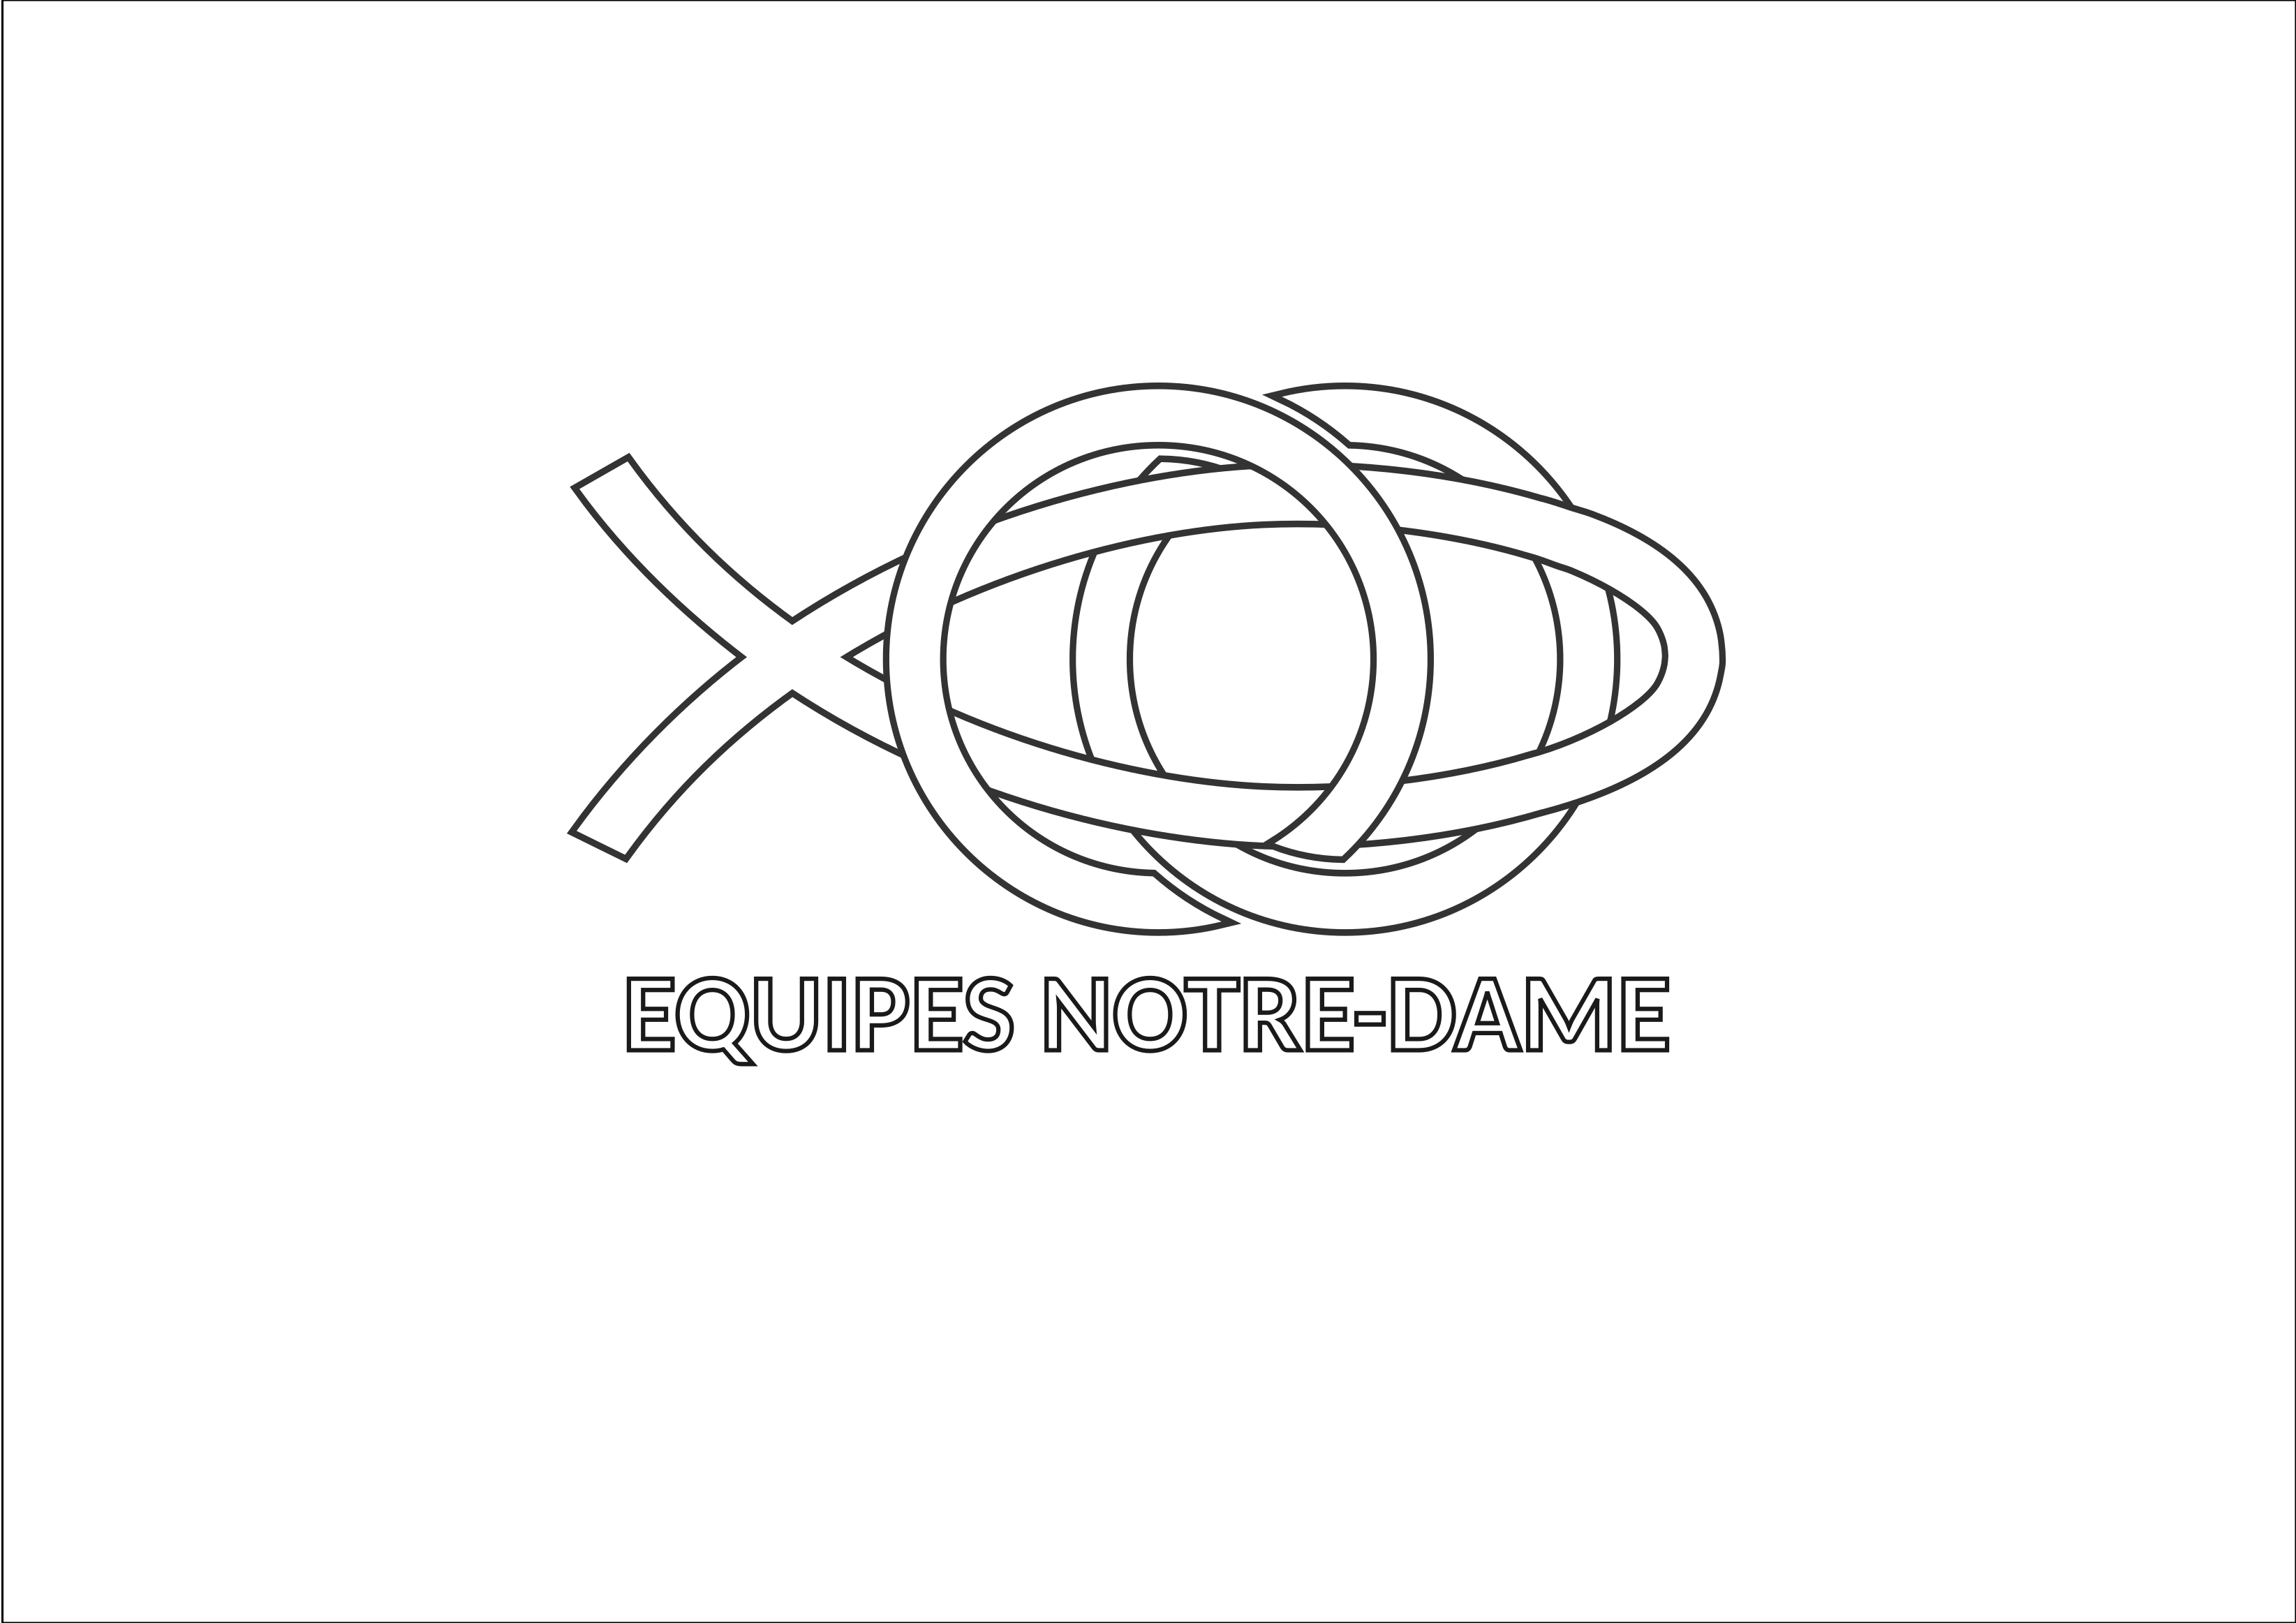 Equipes-Notre-Dame-Outline-LOGOnName-Markoze'2021